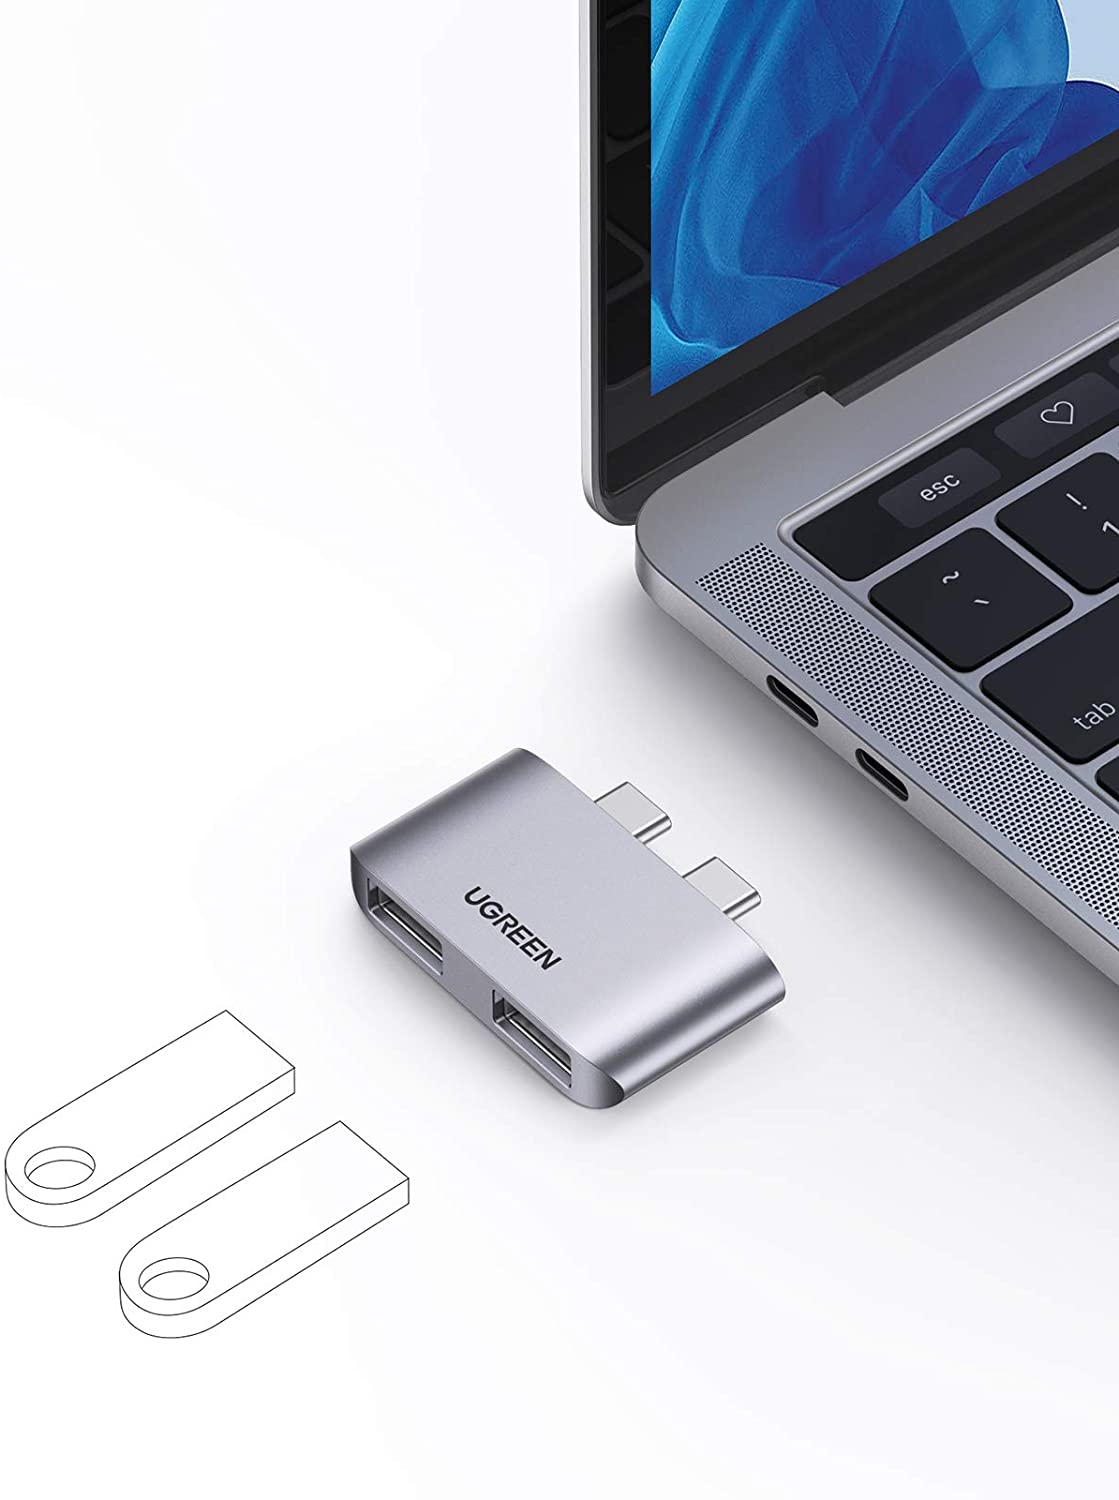 Bộ chuyển Type C sang USB 3.1 UGREEN 10913 - Hỗ trợ cho Macbook - Tốc độ truyền tải lên đến 10Gbps